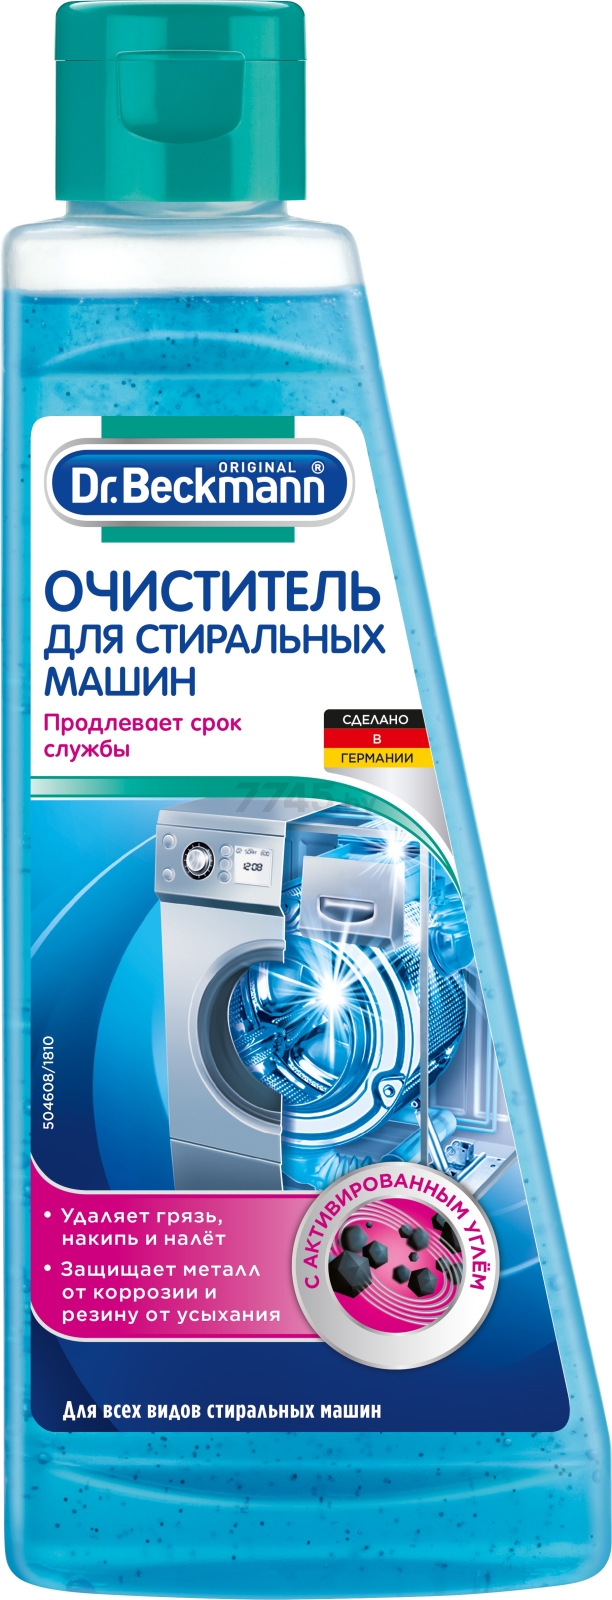 Средство для очистки стиральных машин DR.BECKMANN 0,25 л (33561)